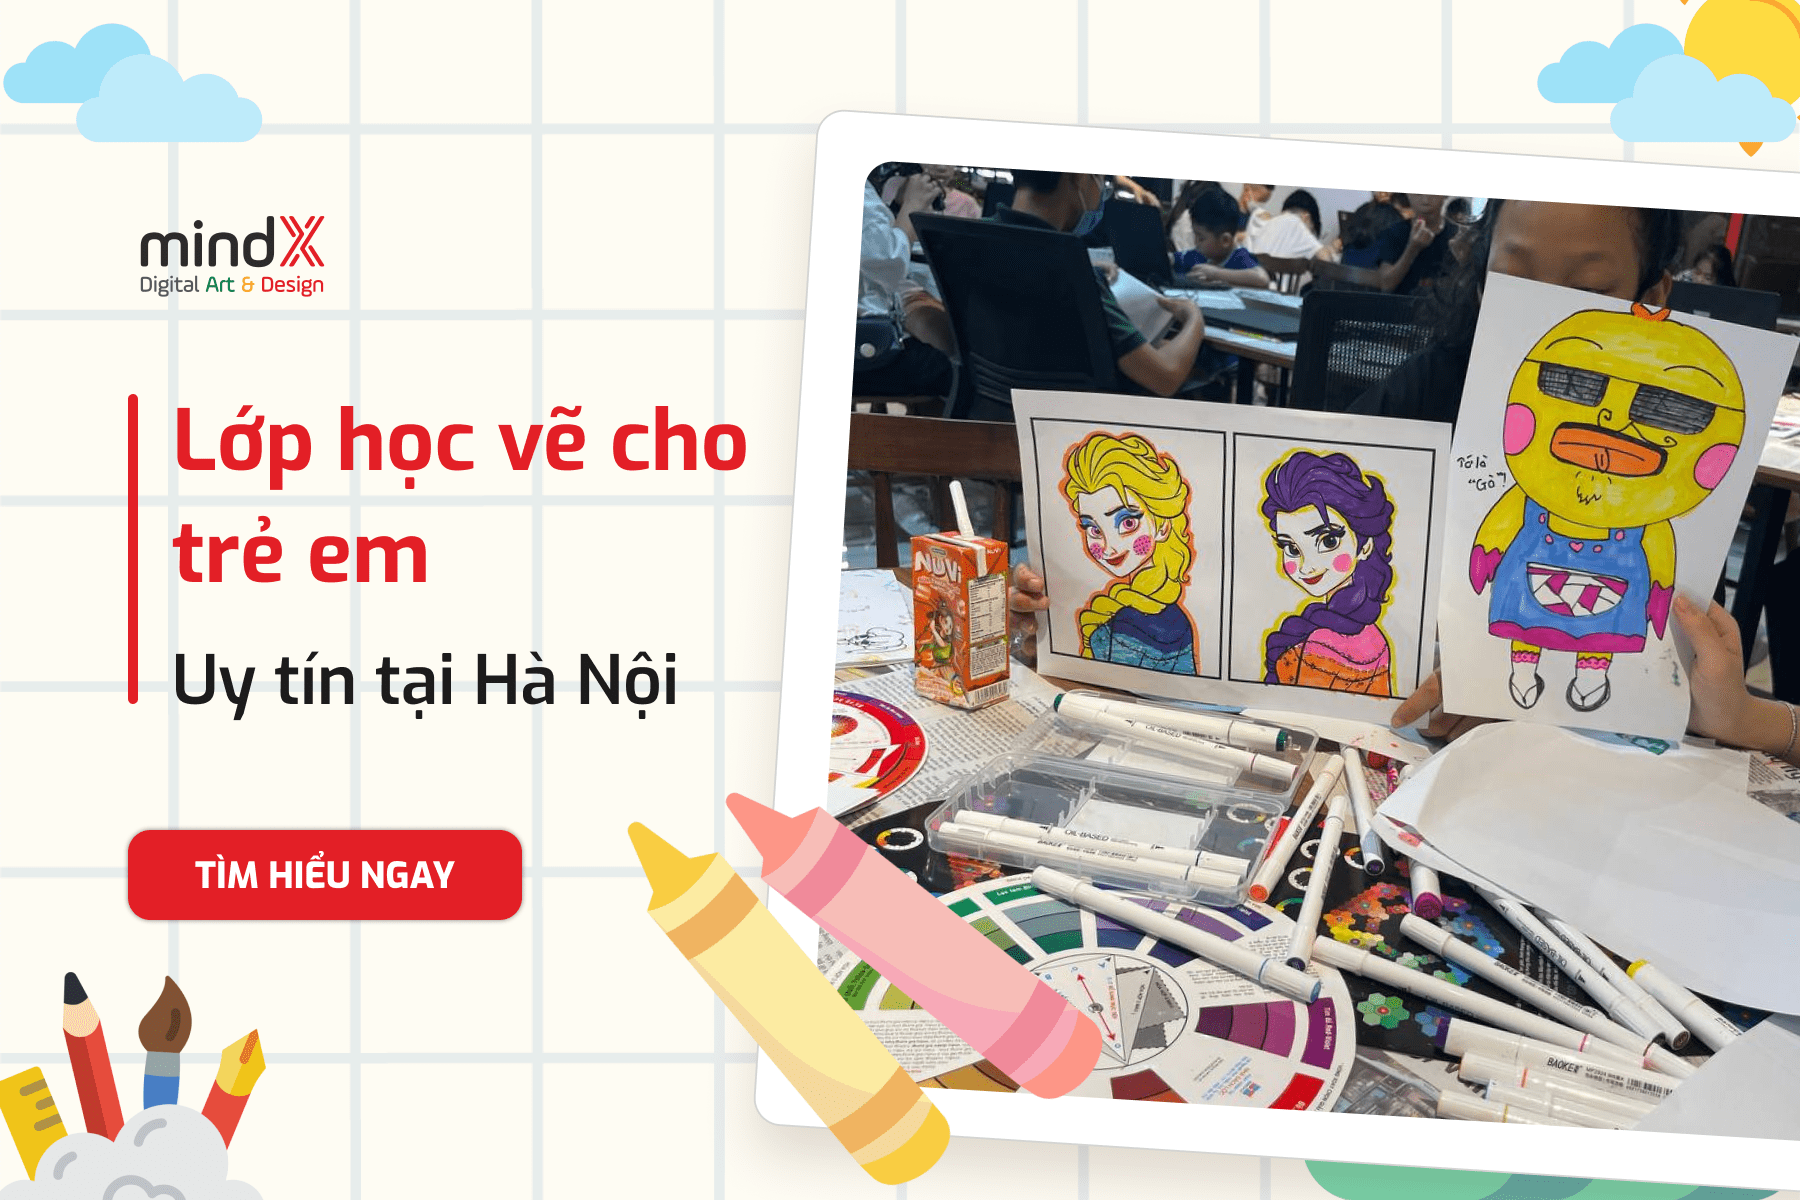 10 lớp học vẽ uy tín nhất cho trẻ em ở Hà Nội  TH Điện Biên Đông